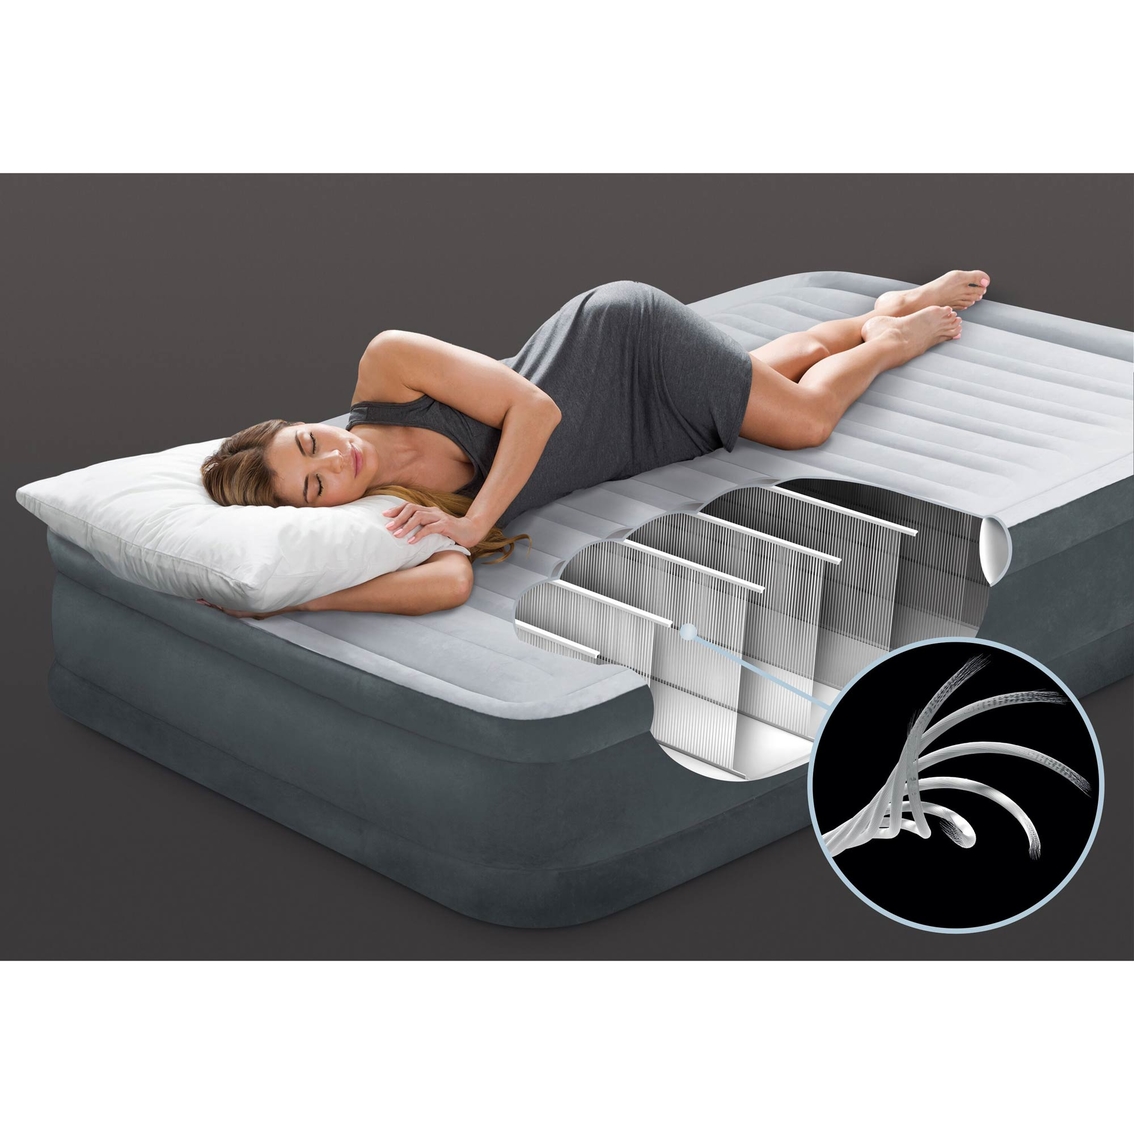 Intex Dura-Beam Mid-Rise Premium Comfort Airbed - Image 2 of 5